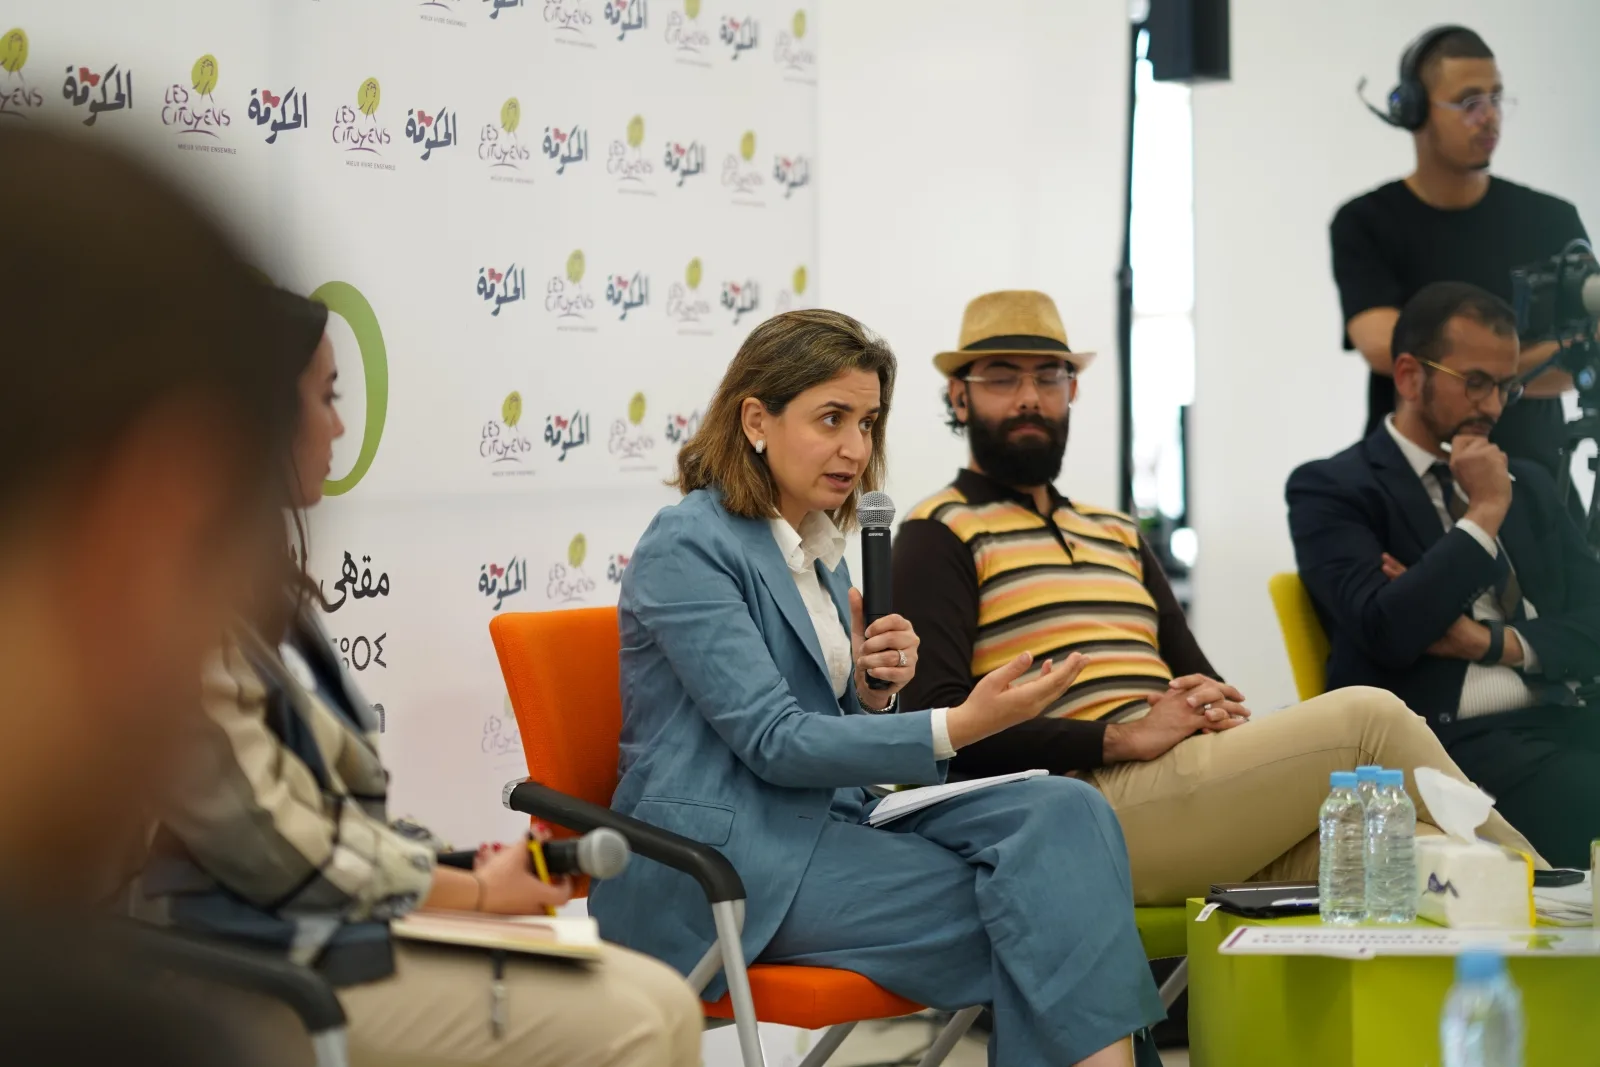 غيثة مزور وزيرة الانتقال الرقمي وإصلاح الإدارة متحدثة خلال لقاء "مقهى المواطنة" منظم من طرف حركة "المواطنون"